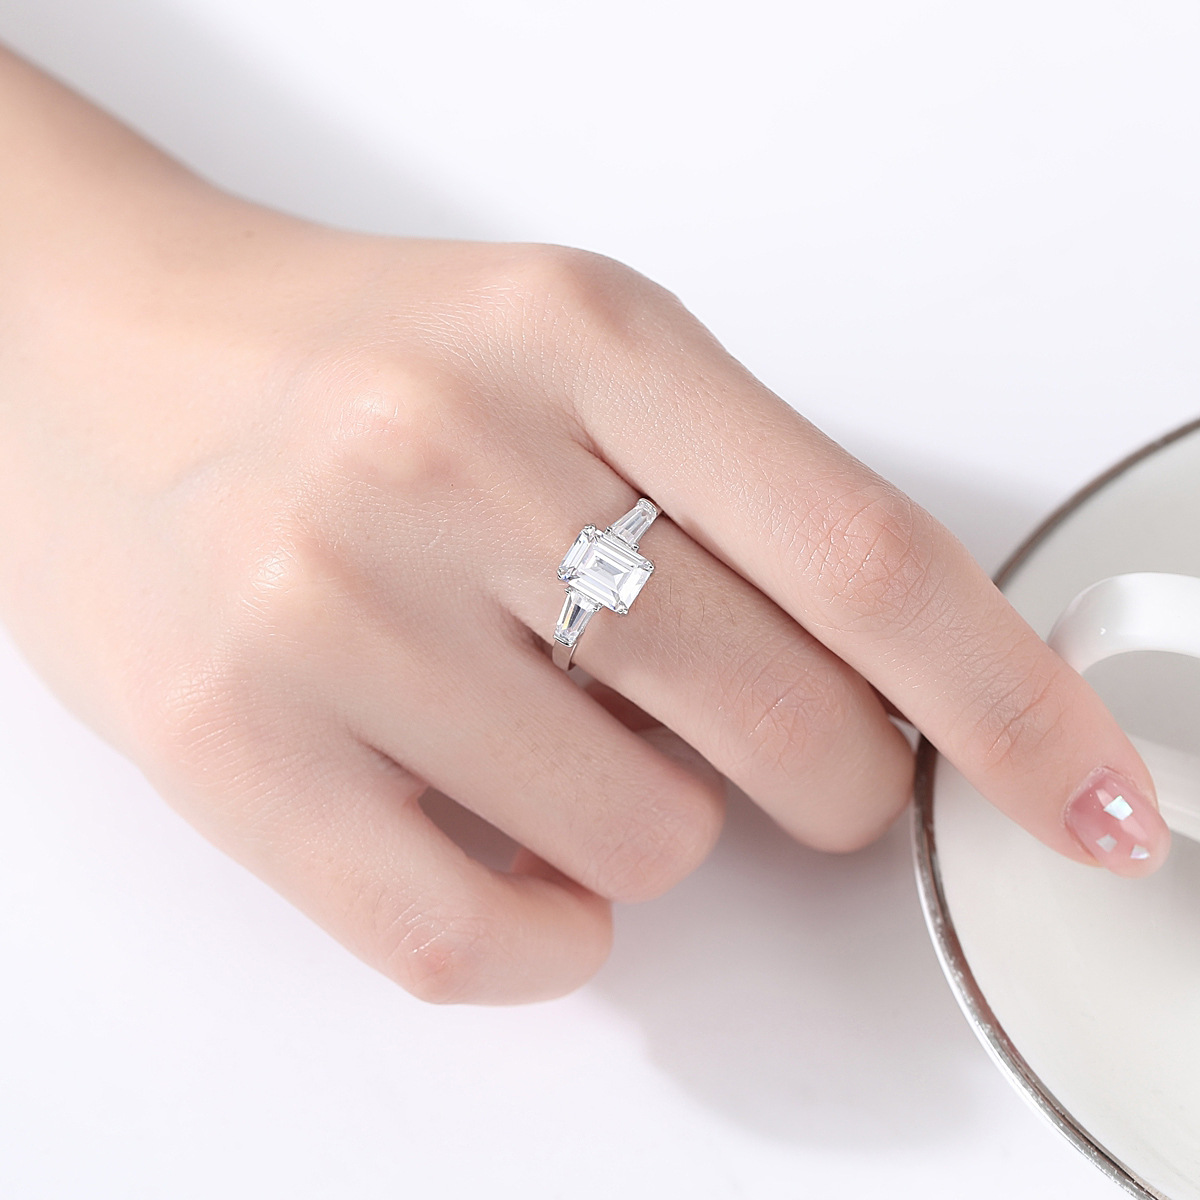 Gemstone Cut Crystal Cz Sterling Silver Ring